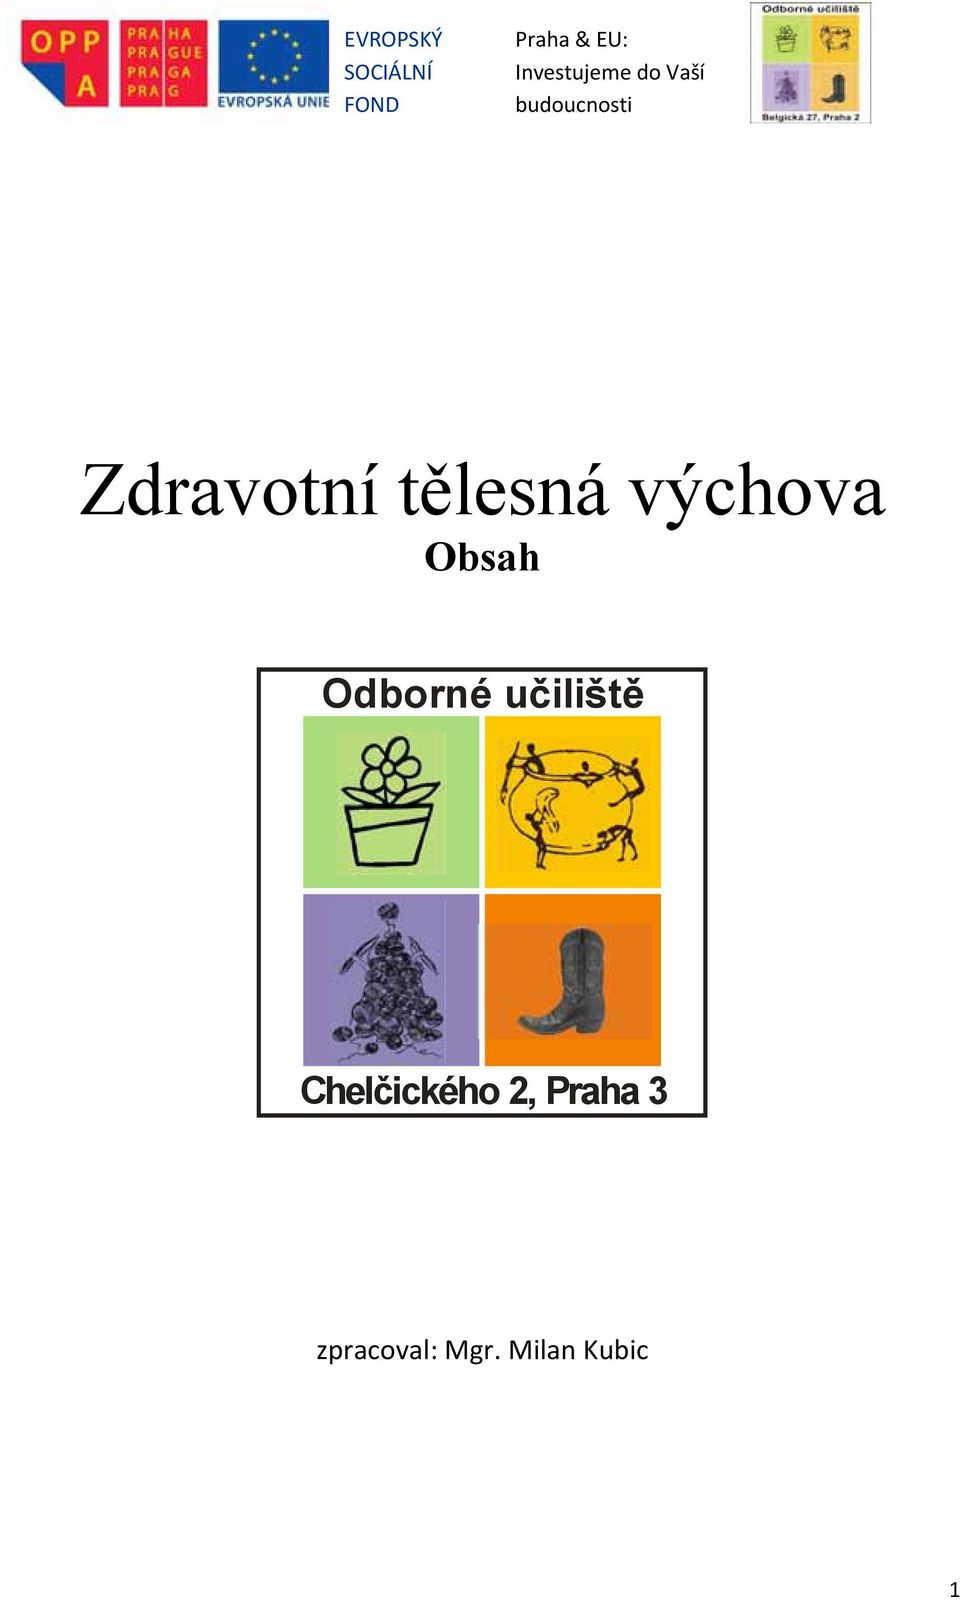 Chelčického 2, Praha 3